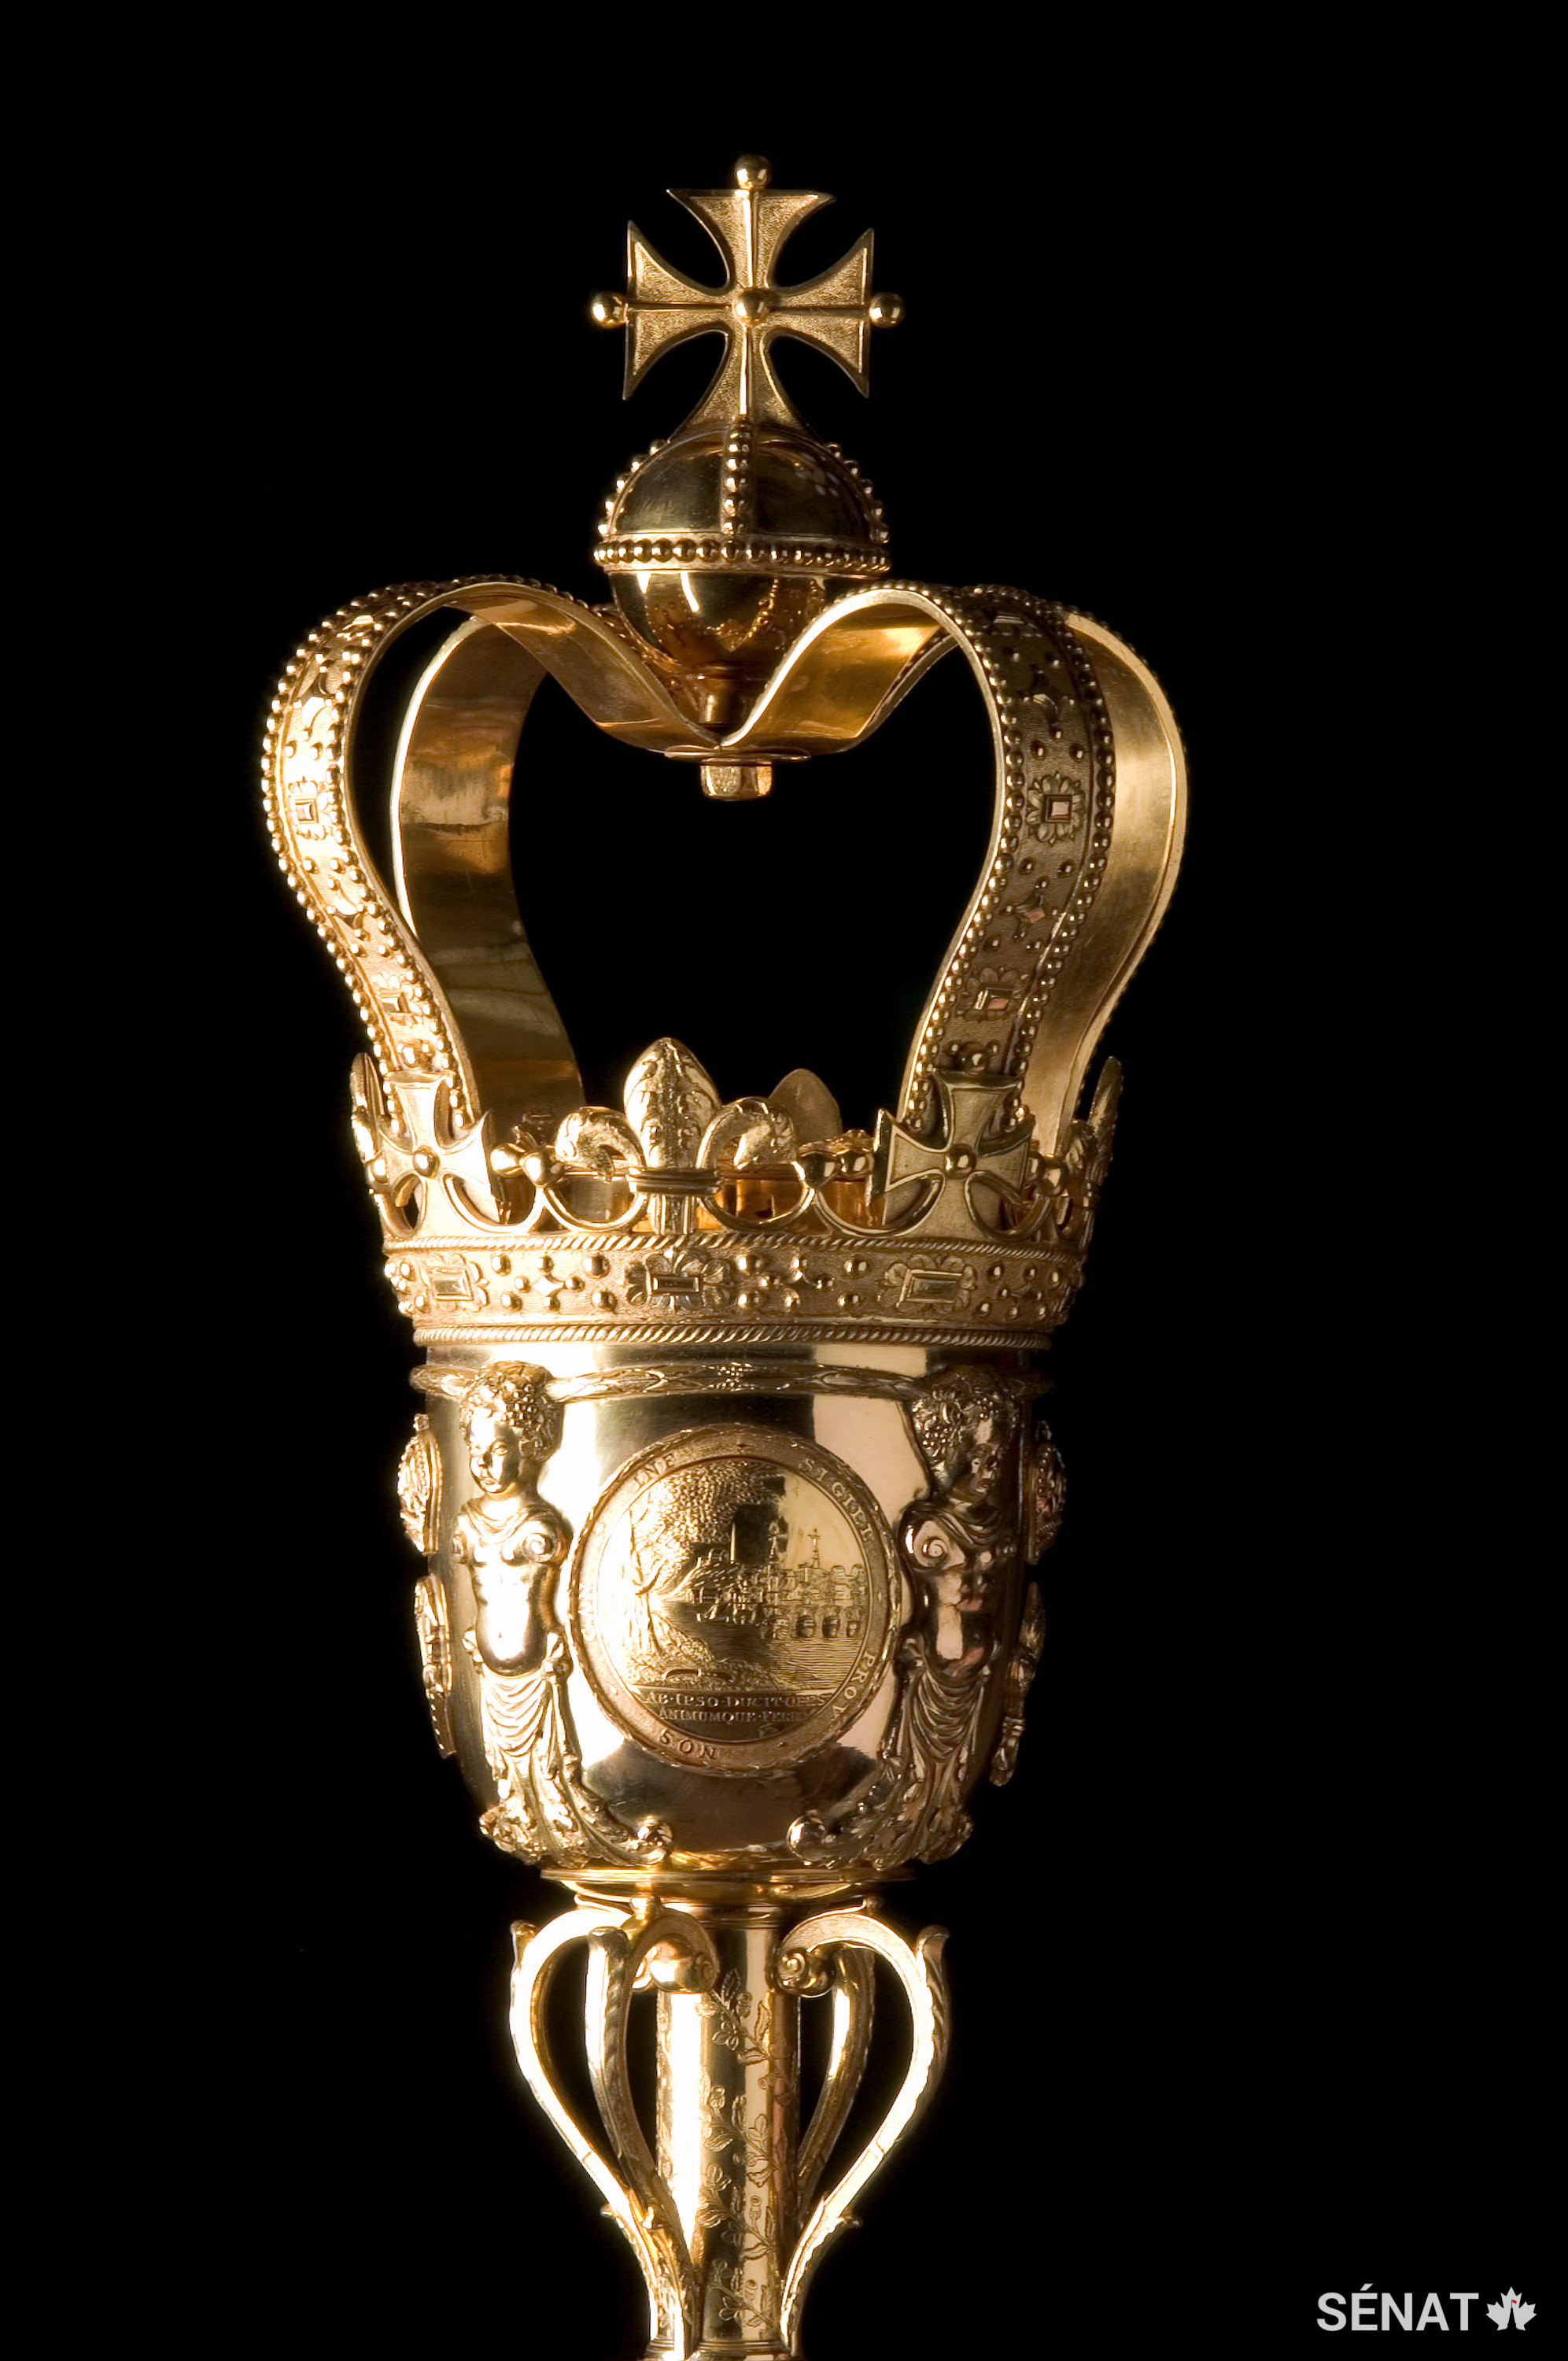 La masse du Sénat de 1,6 m faite de laiton plaqué d’or pèse environ 11 kg et est le symbole de l’autorité du monarque au sein du Sénat du Canada.